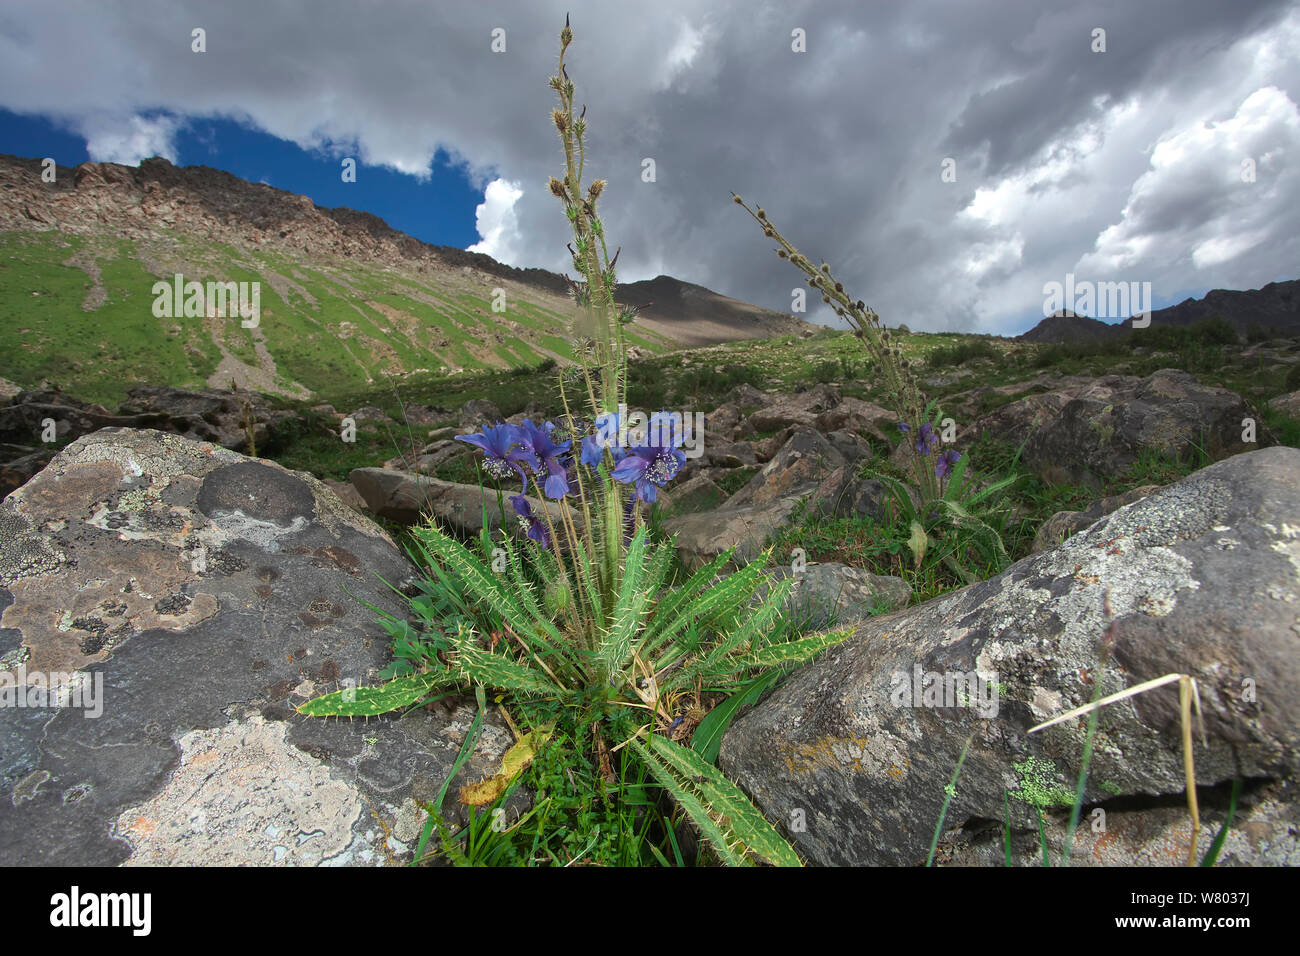 Le figuier de pavot bleu (Meconopsis horridula) dans l'habitat, Serxu Shiqu, comté, province du Sichuan, Chine, plateau du Qinghai-Tibet. Banque D'Images